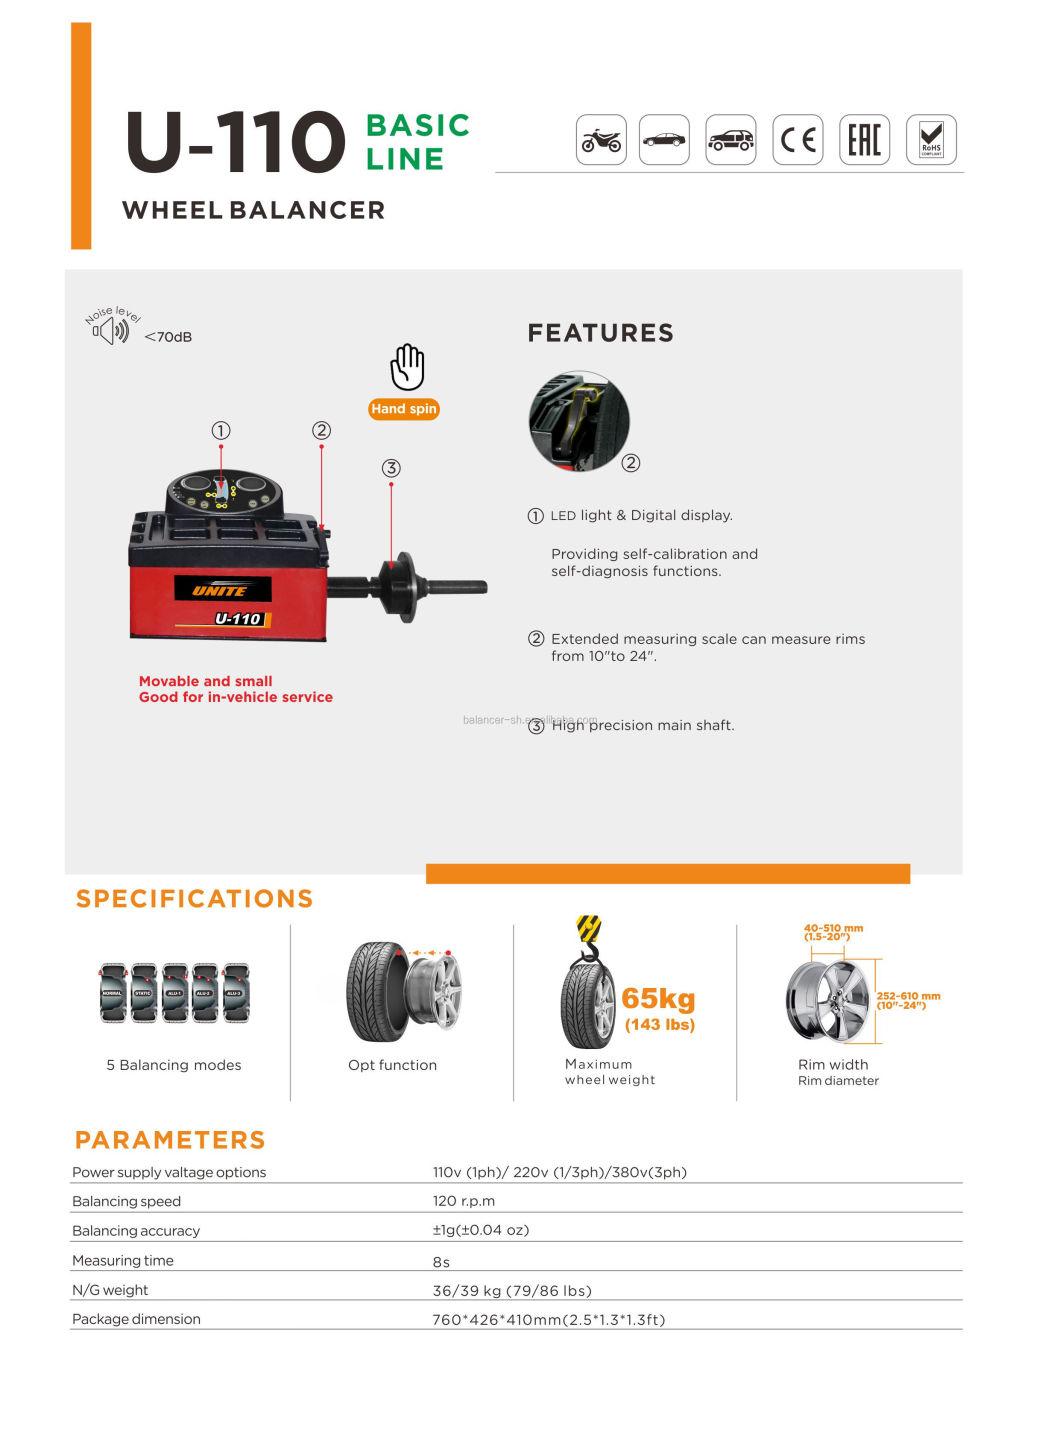 Unite Wheel Balancing Machine From Professional Manufacturer Wheel Balancer Smart Balance Wheel U-110